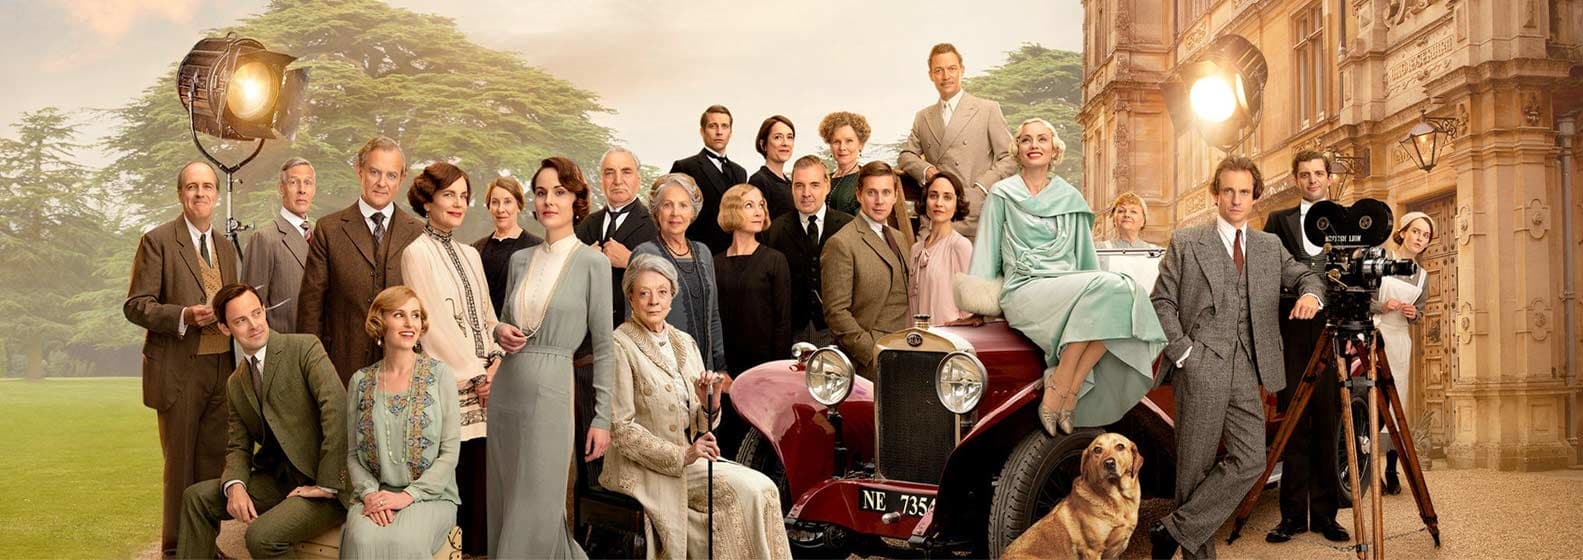 Downton Abbey II : Une Nouvelle Ère - Header Image